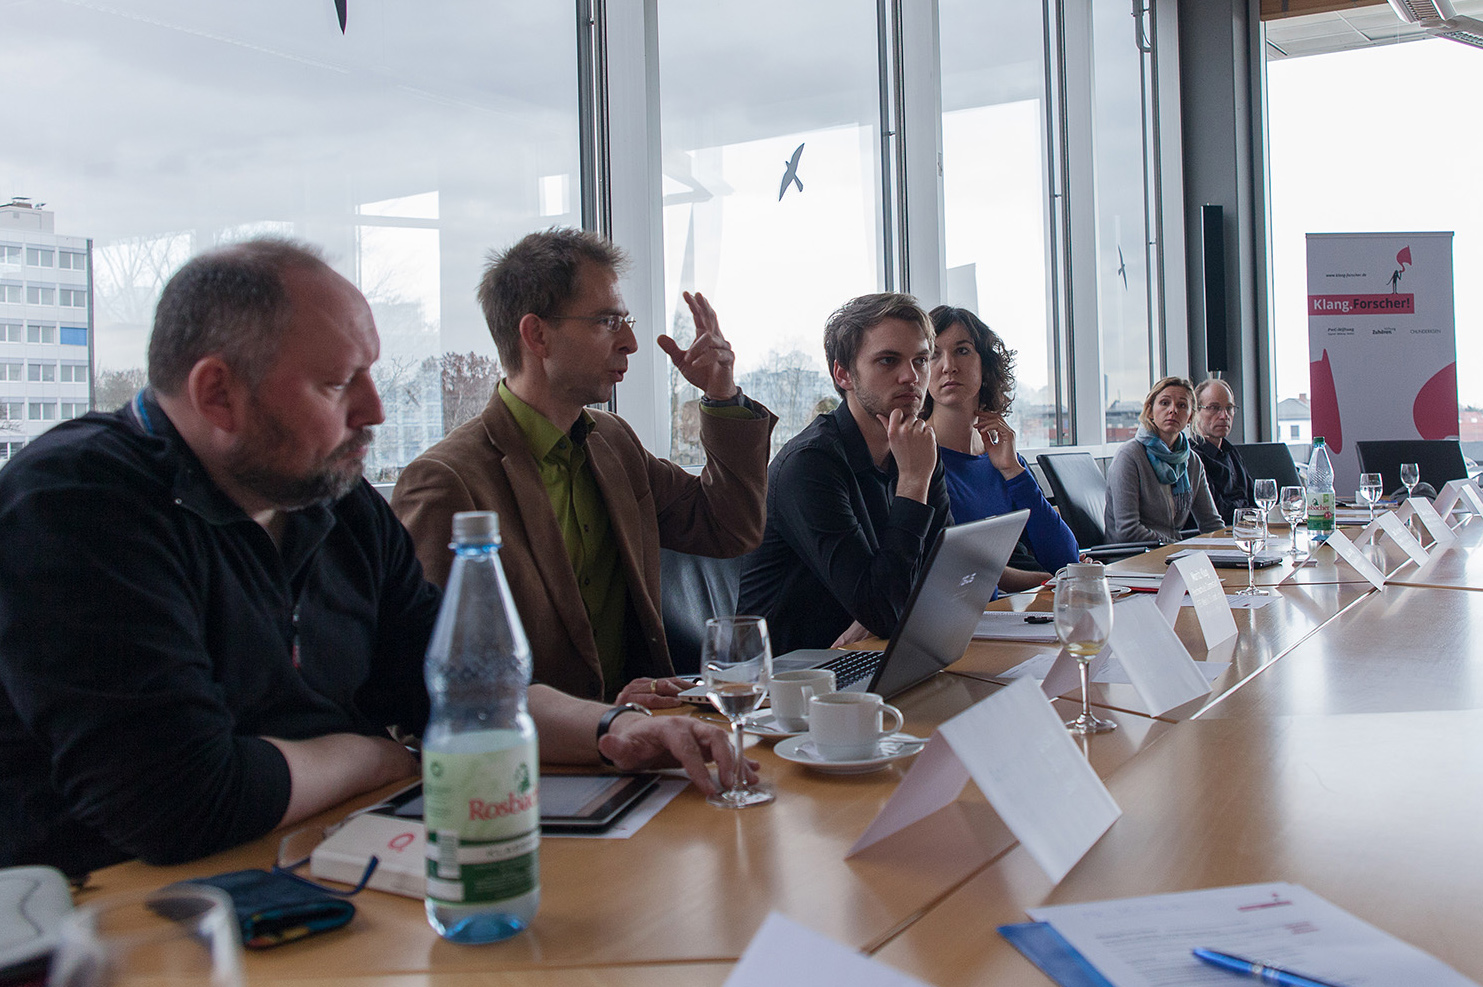 Angeregte Diskussionen bei der Auftaktveranstaltung von Klang.Forscher! in Frankfurt/Main